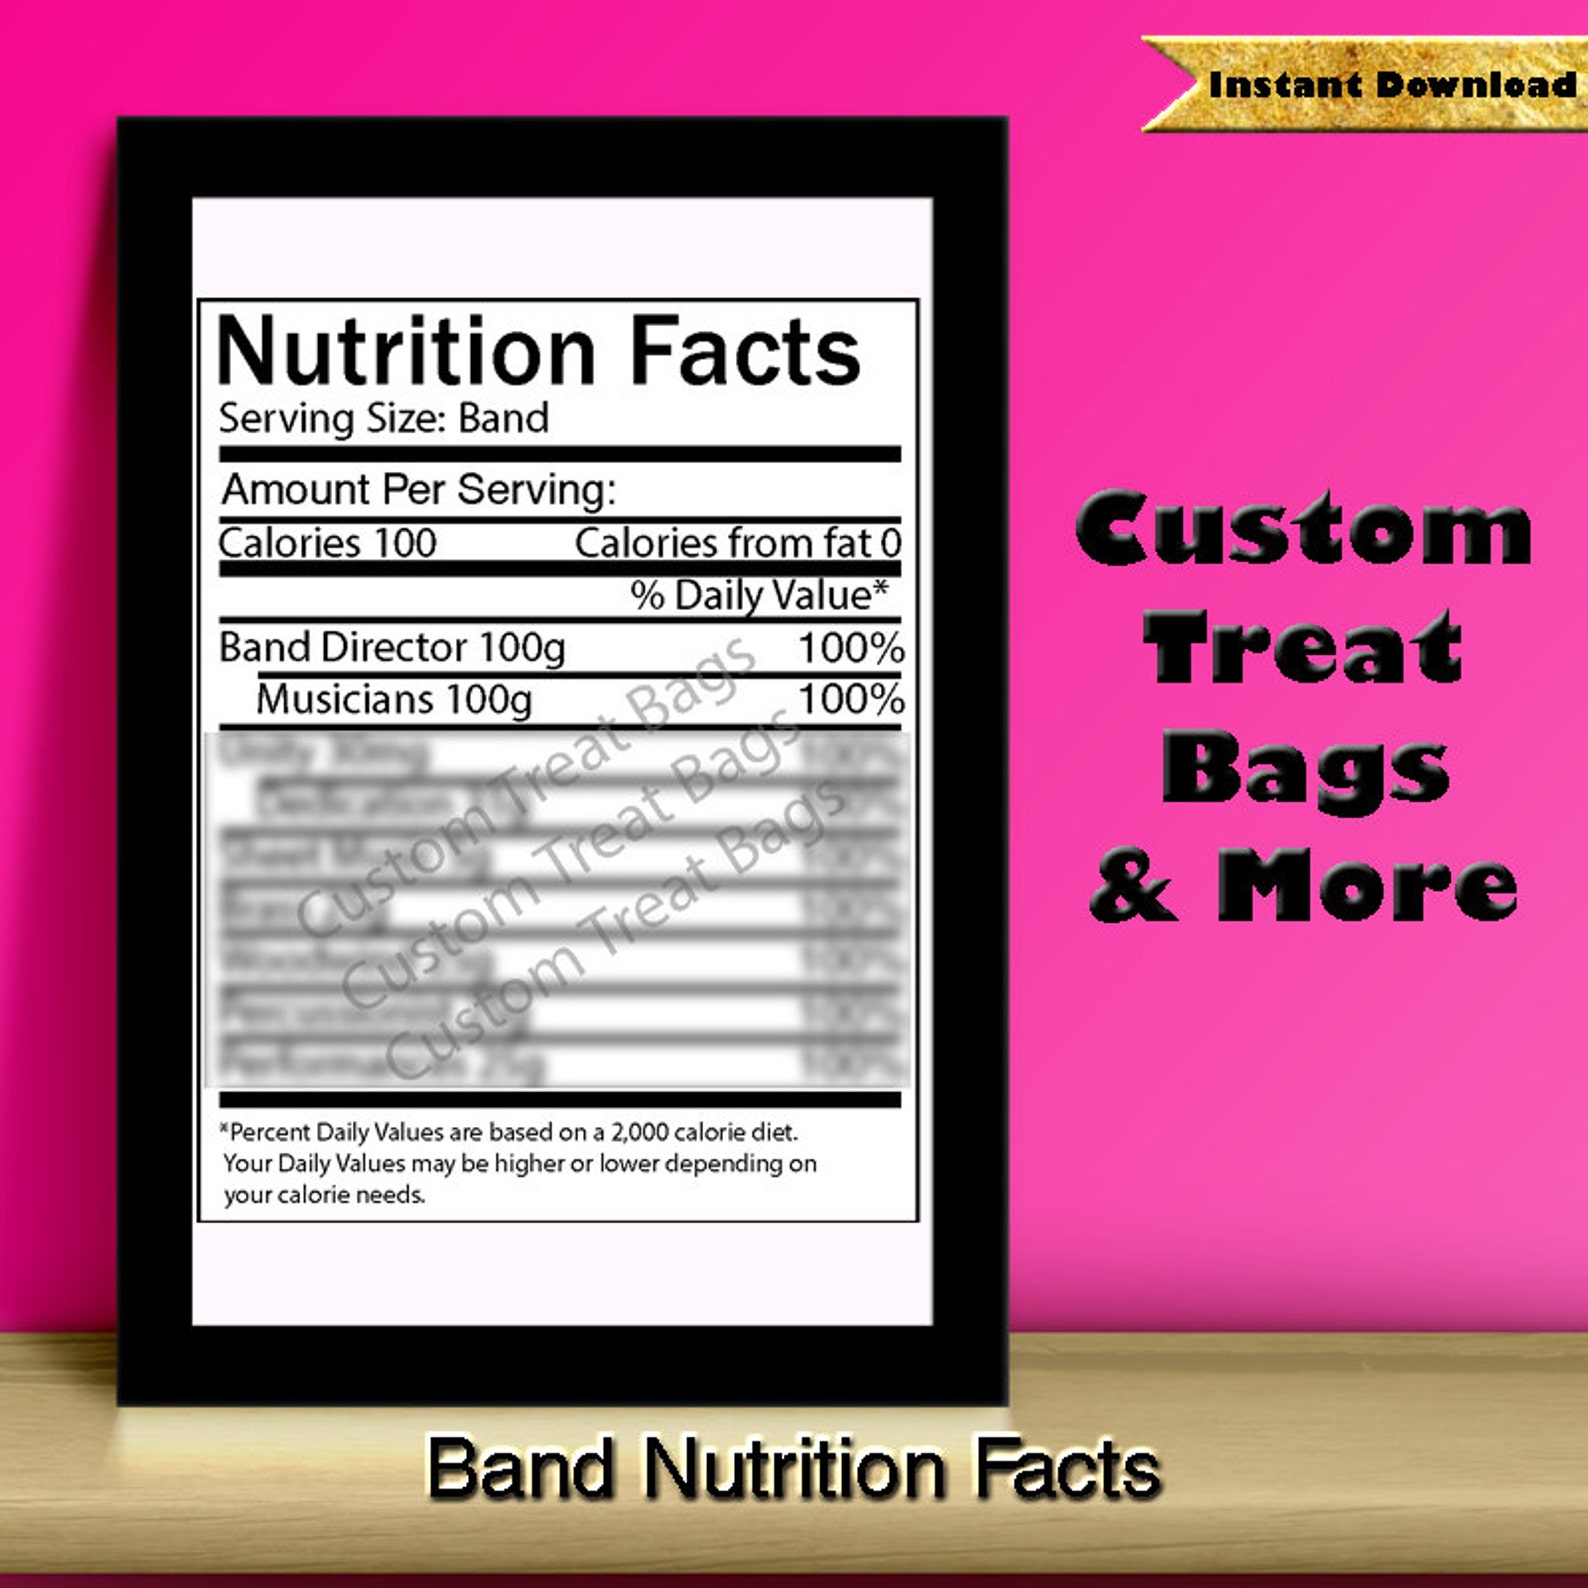 Nutrition Facts Banderole: Für Custom Chip behandeln Taschen Bild 1.